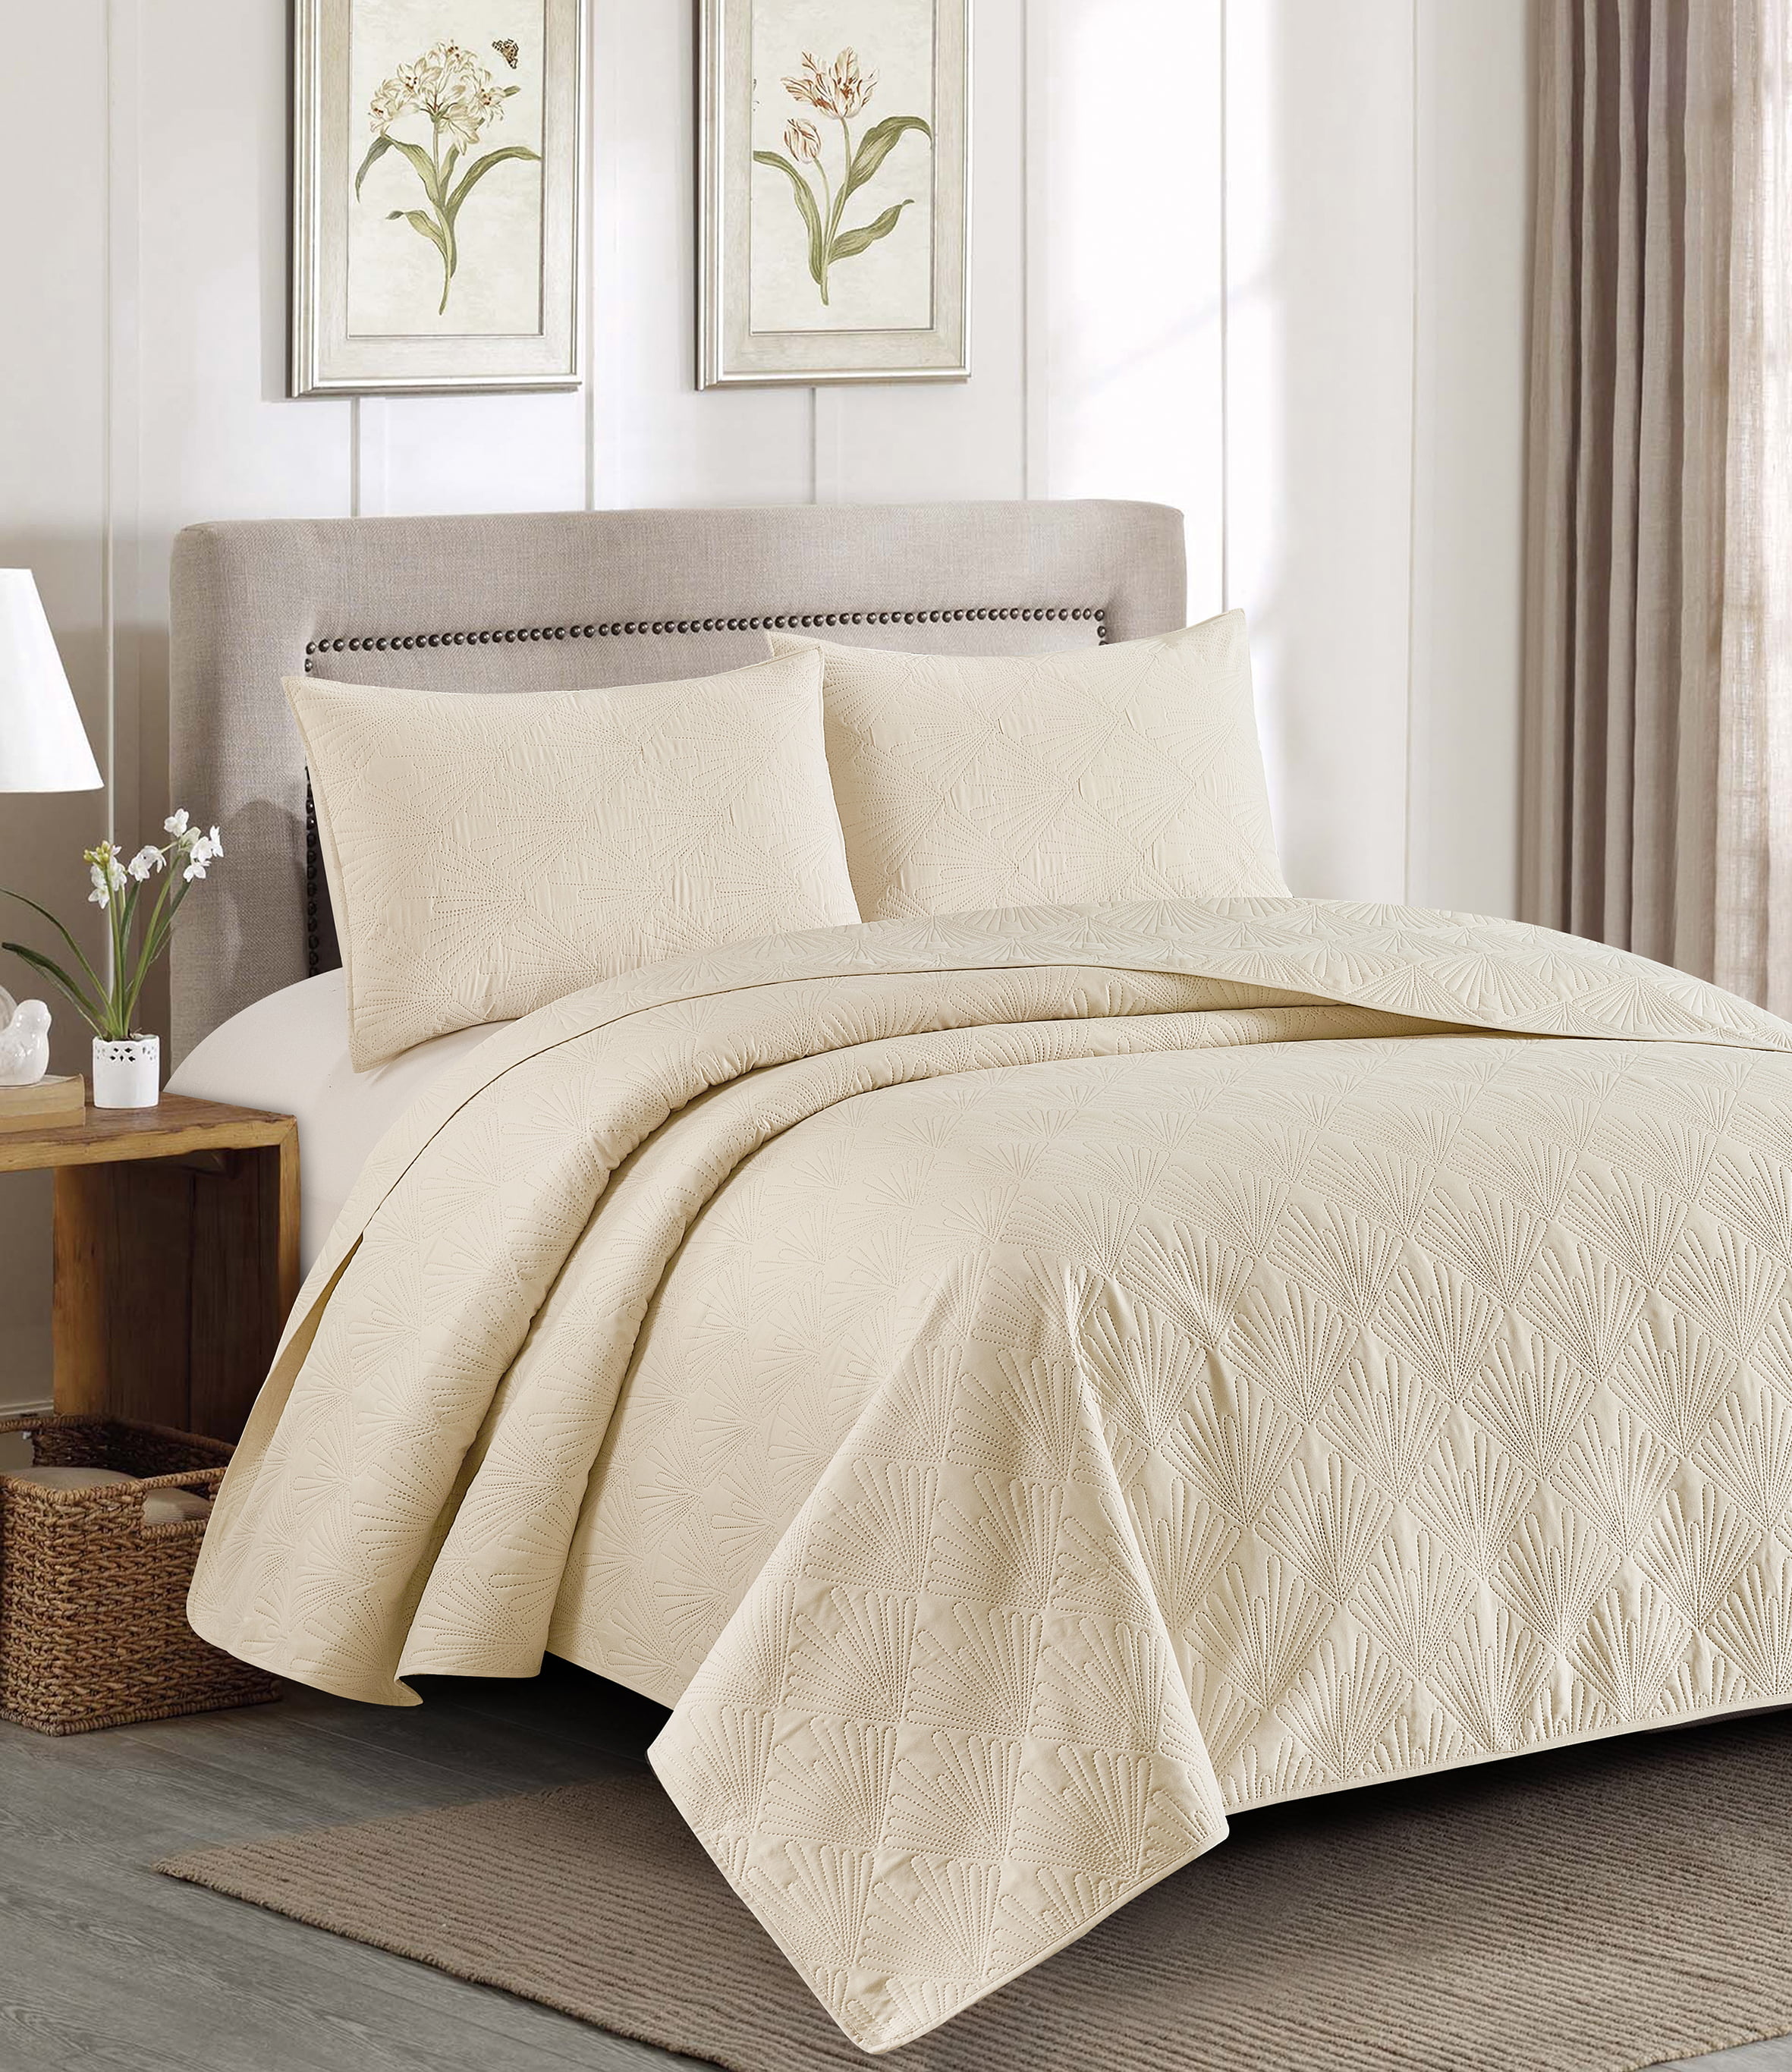 Oversized 3-Piece Set Comforter Bed Cover EleganHome Bedspread Coverlet Set 